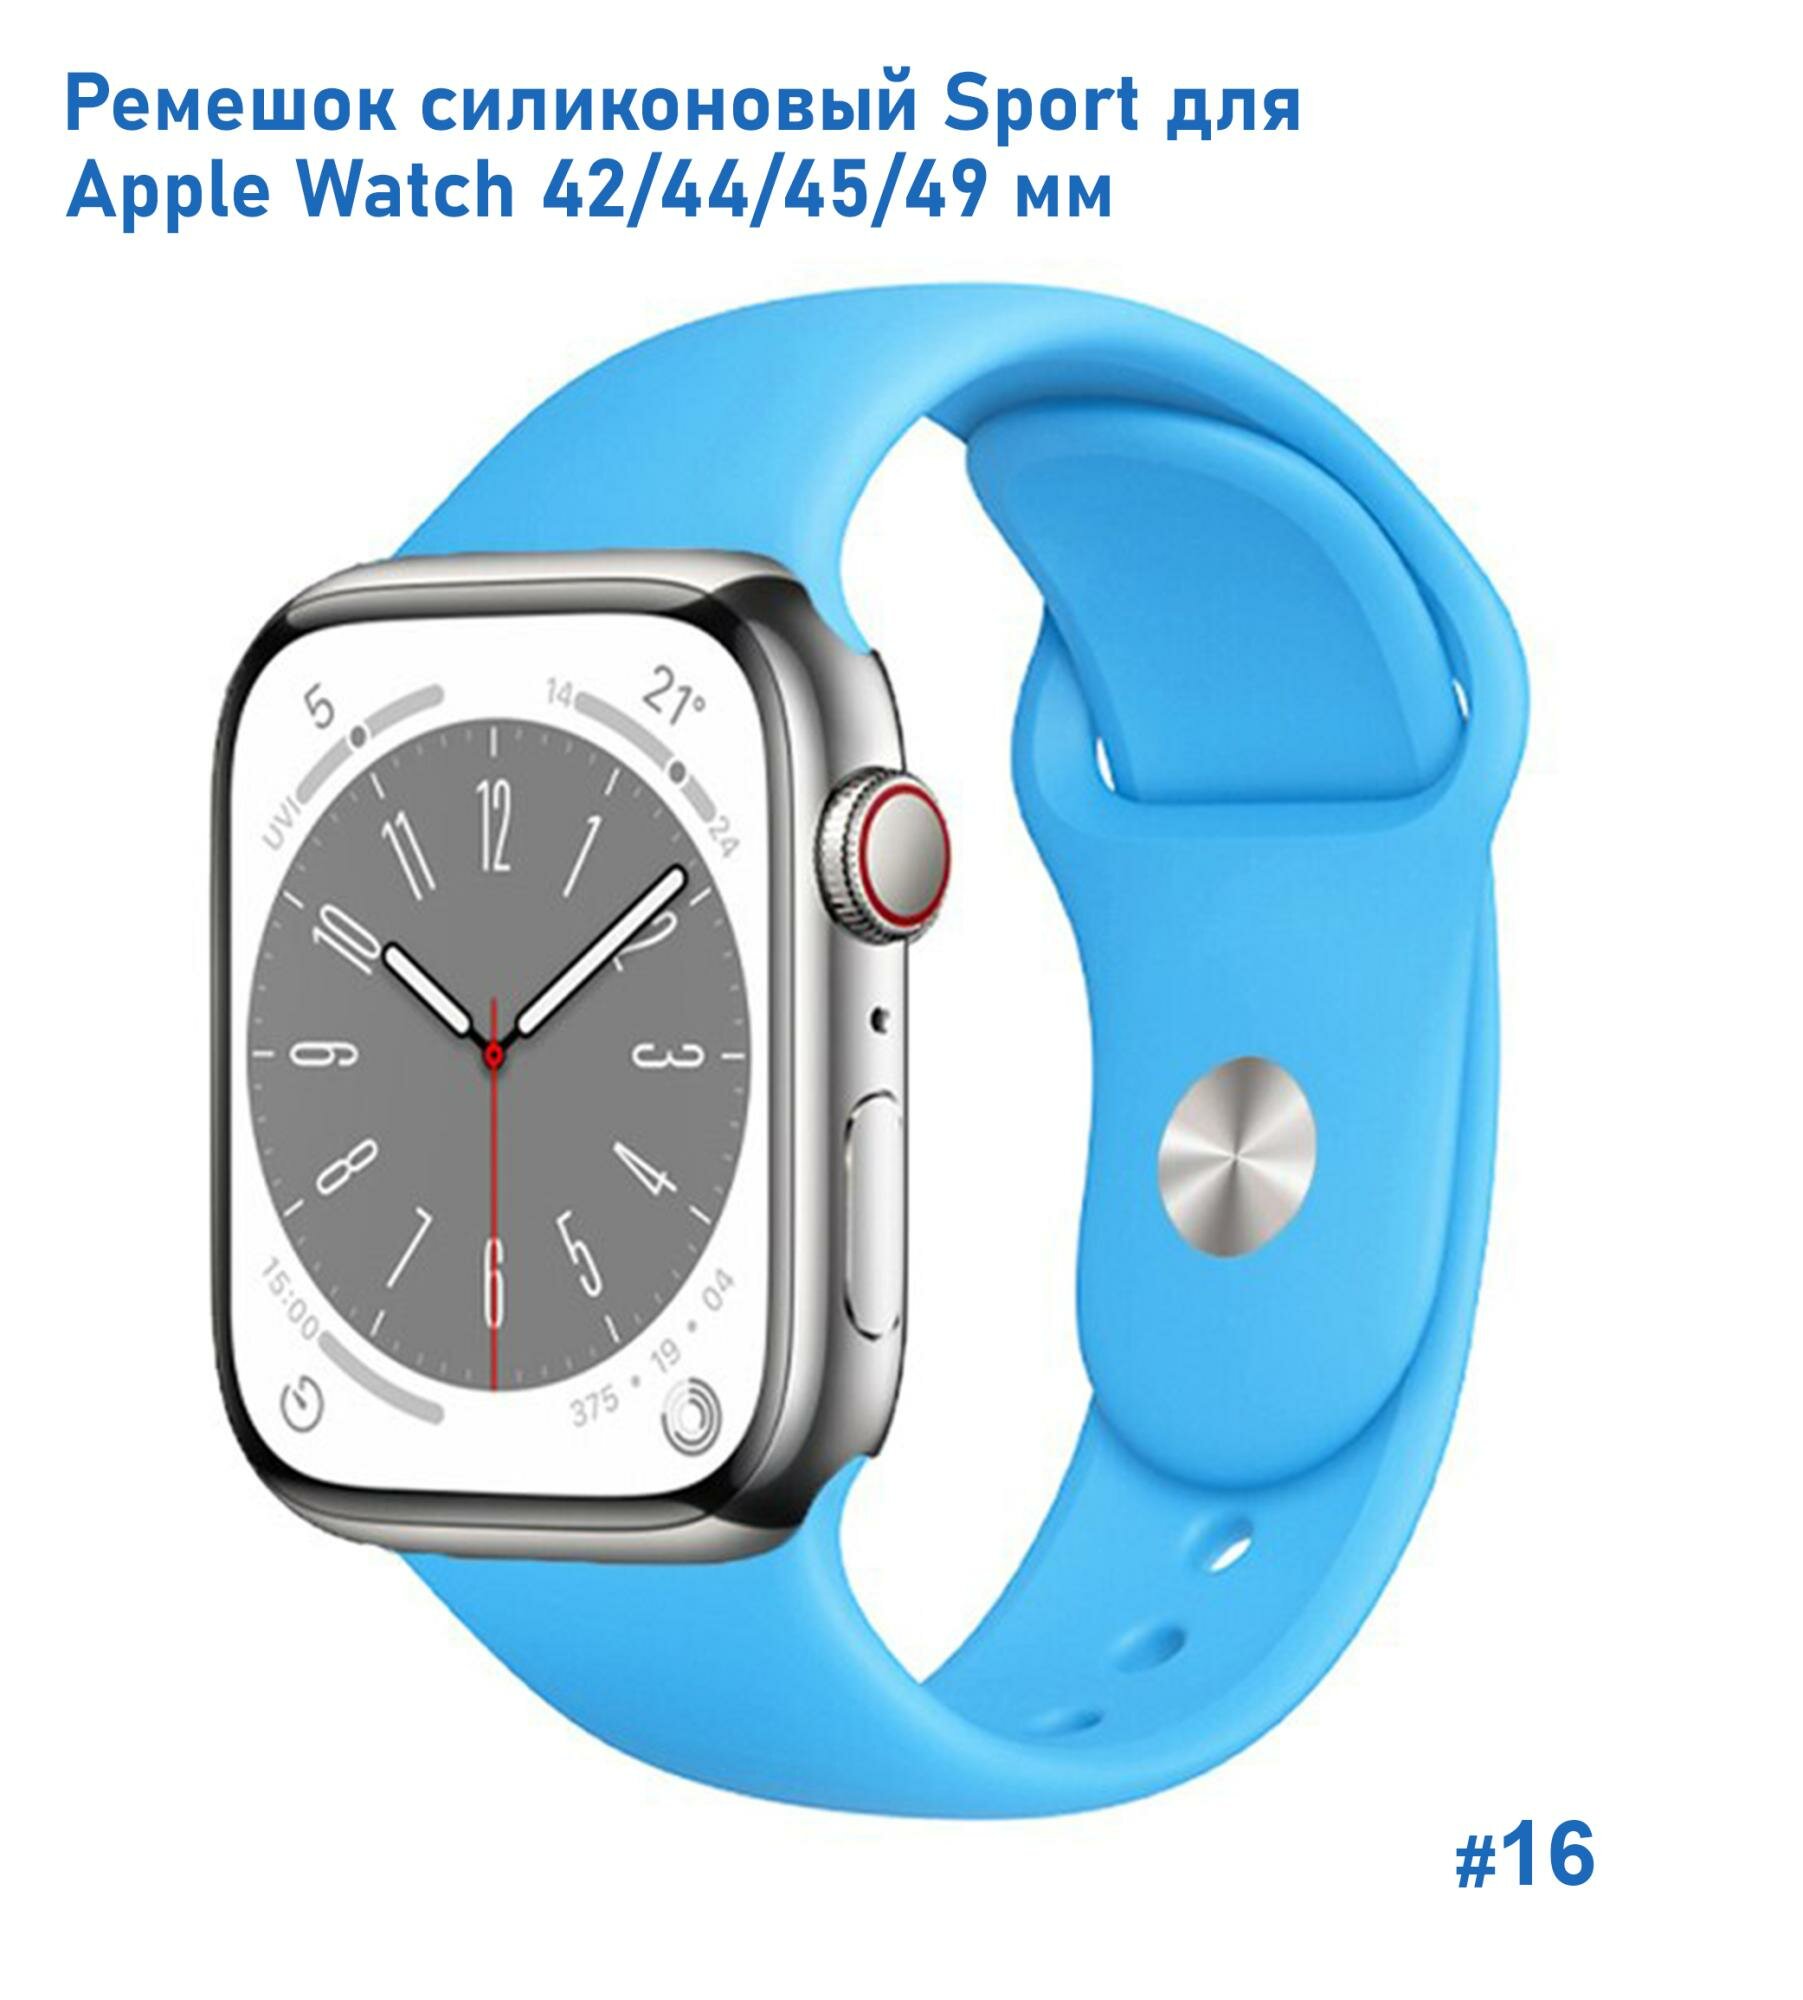 Ремешок силиконовый Sport для Apple Watch 42/44/45/49 мм, на кнопке, голубой (16)